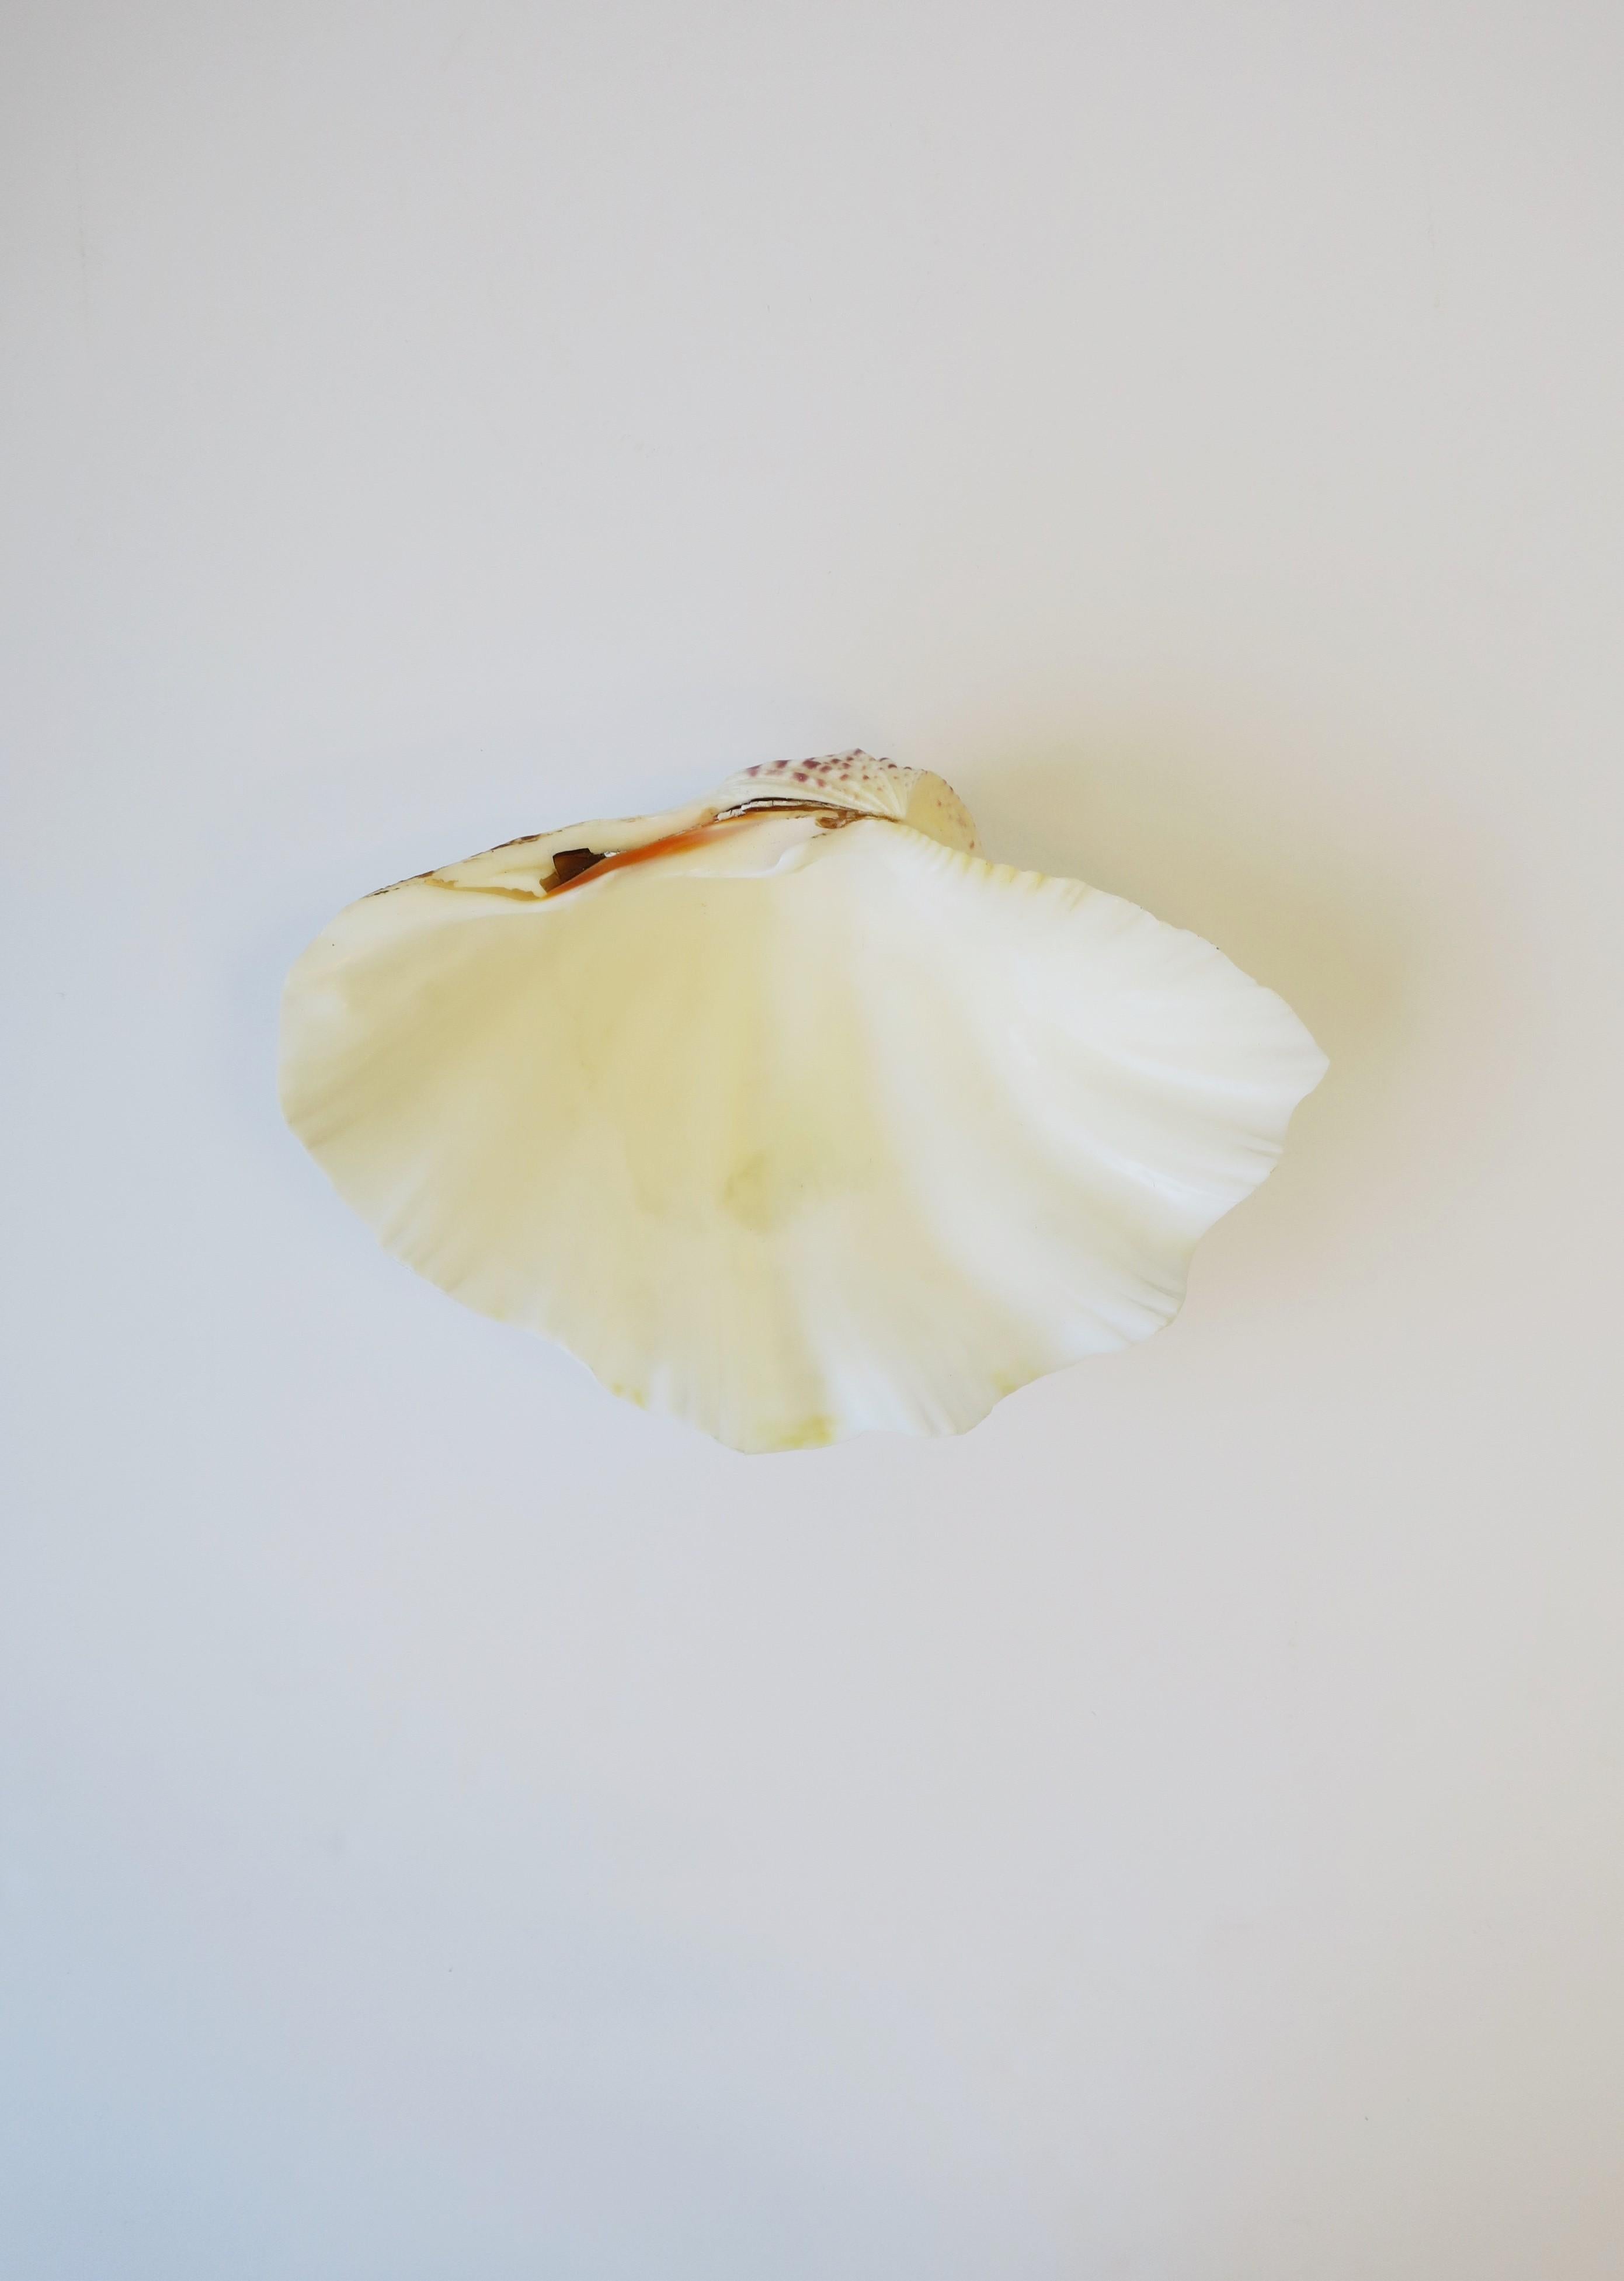 Un beau coquillage de palourde naturel, relativement grand et de couleur blanche. Le coquillage est réel. Magnifique comme pièce autonome ou à remplir avec vos fruits, légumes, etc. préférés. Le coquillage mesure : 3,75